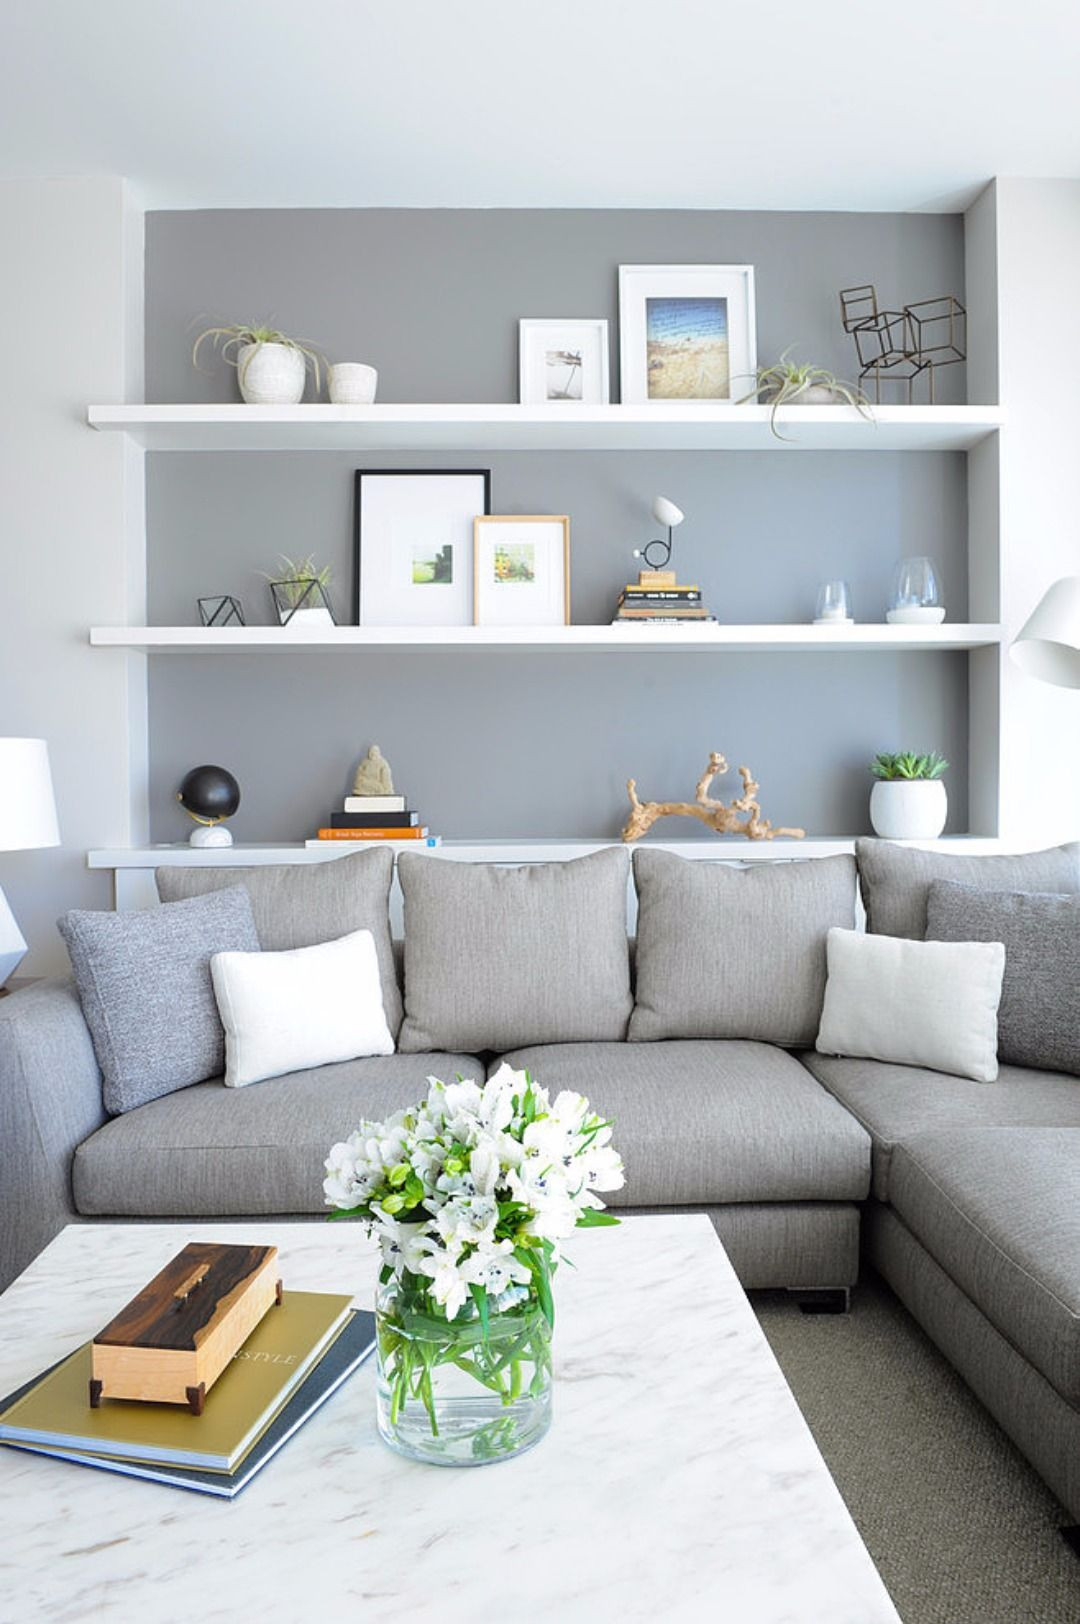 Living Room Shelving Ideas
 10 Tips For The Best Scandinavian Living Room Decor